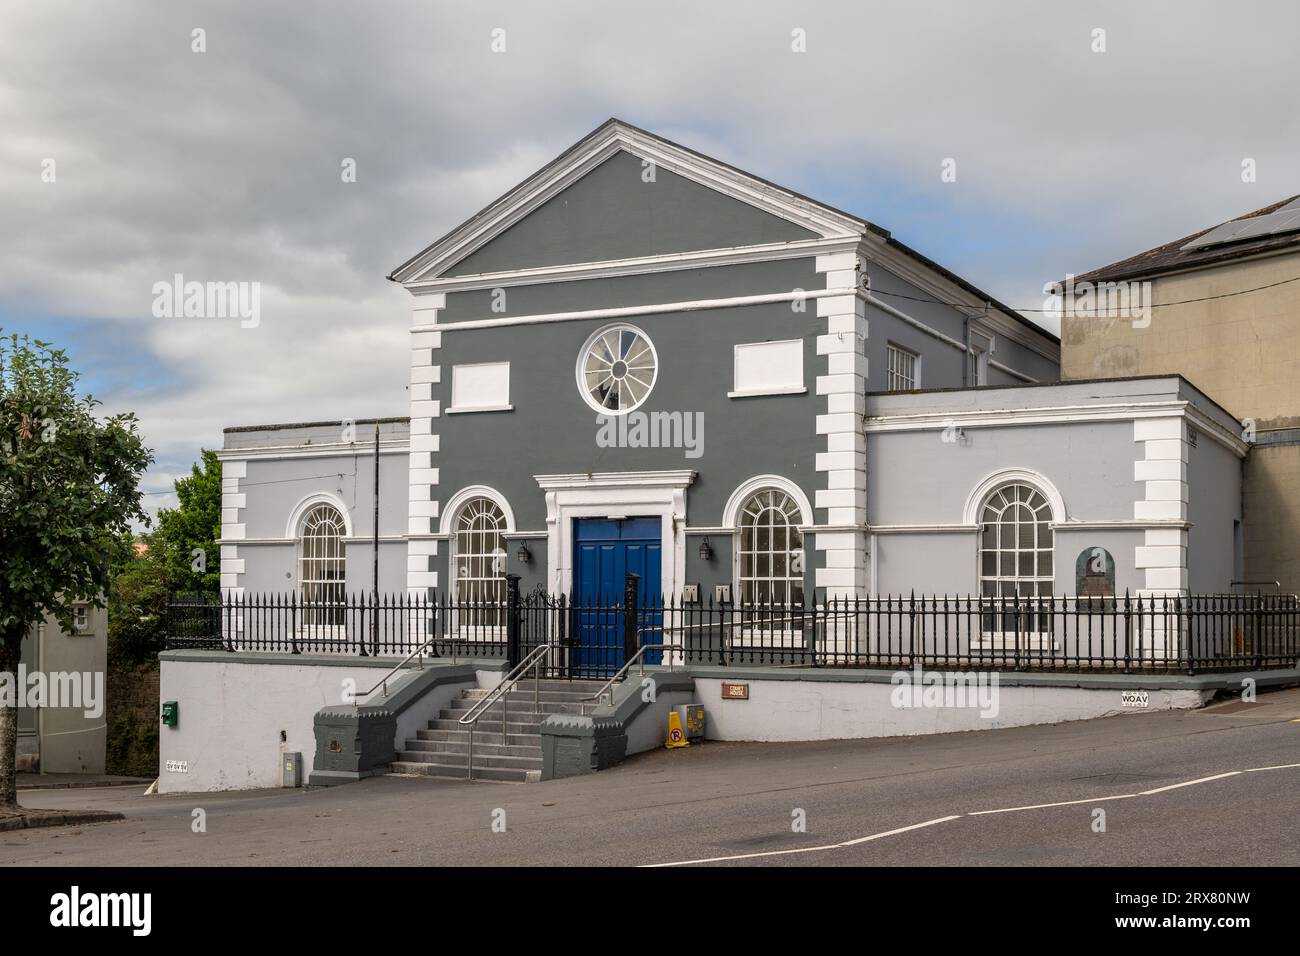 Courthouse in Bandon, West Cork, Ireland. Stock Photo